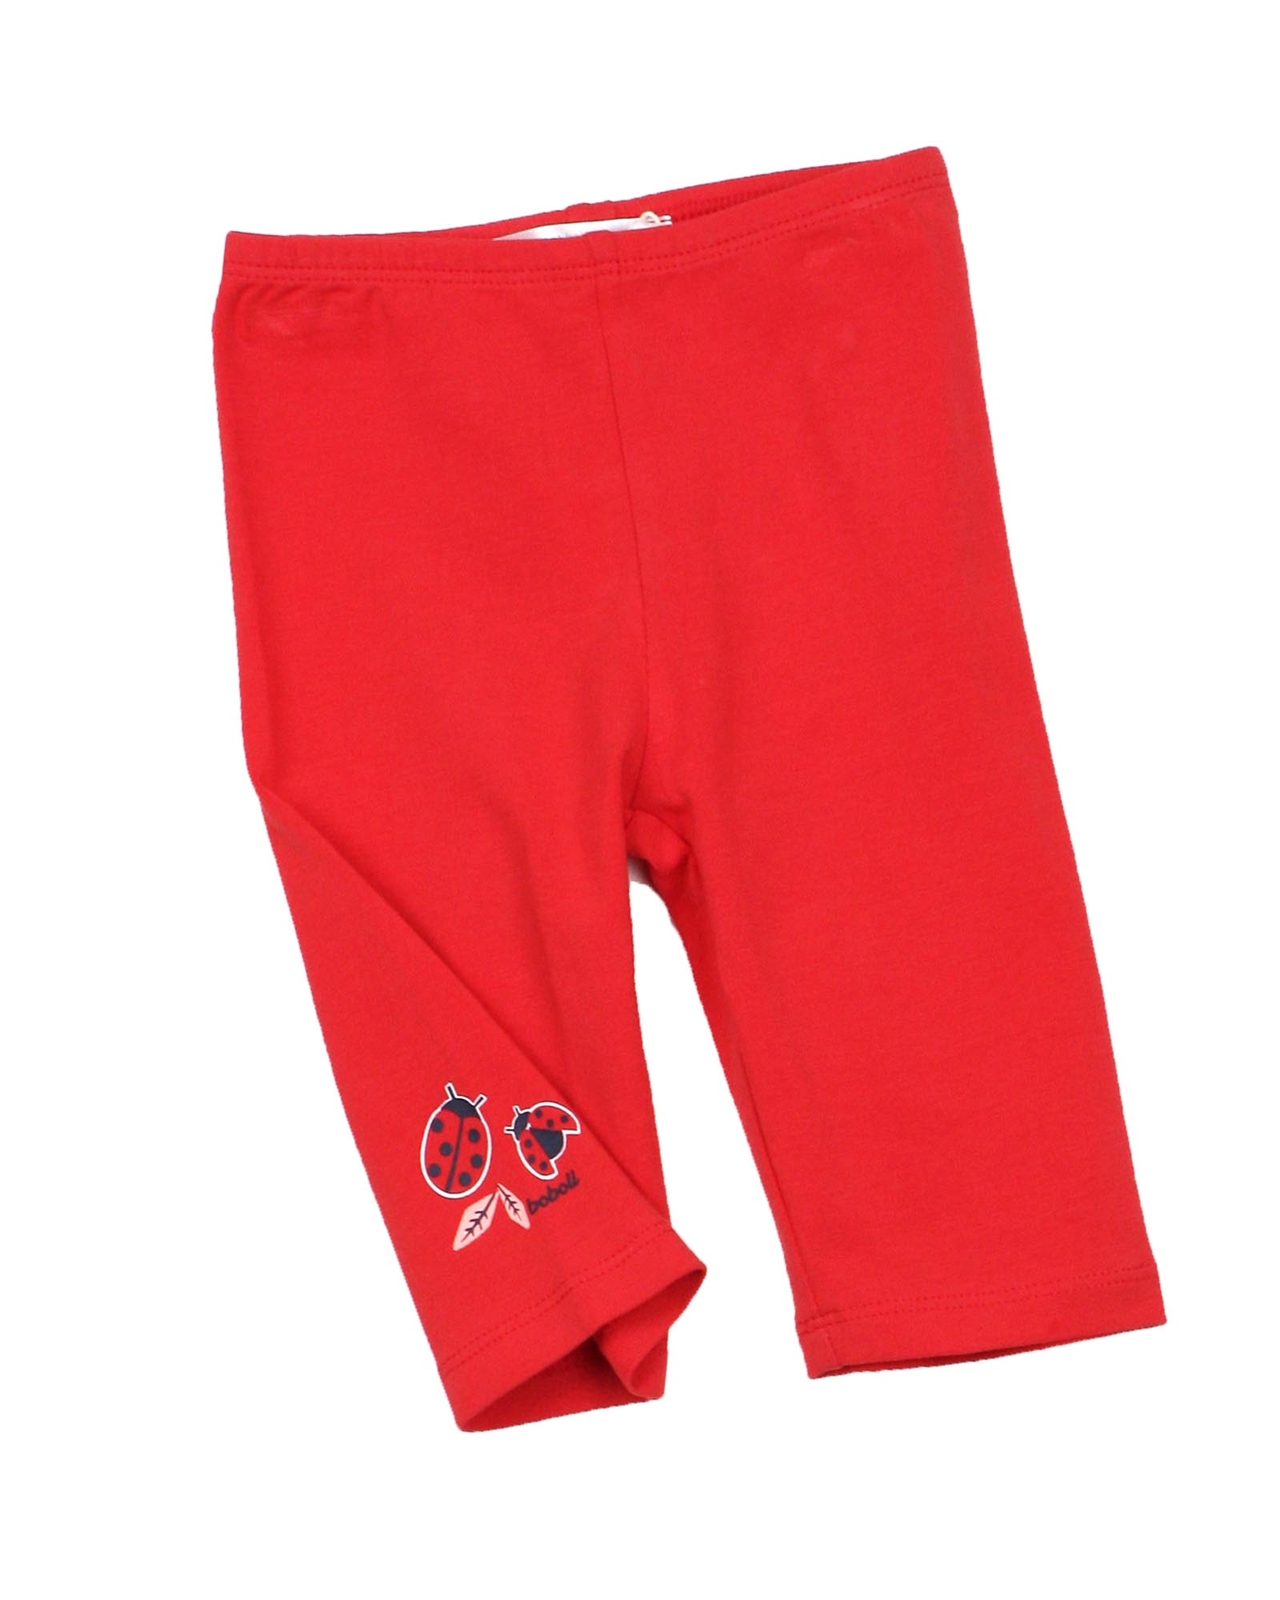 BOBOLI Baby Girls Basic Capri Leggings in Red, Spring/Summer 2021